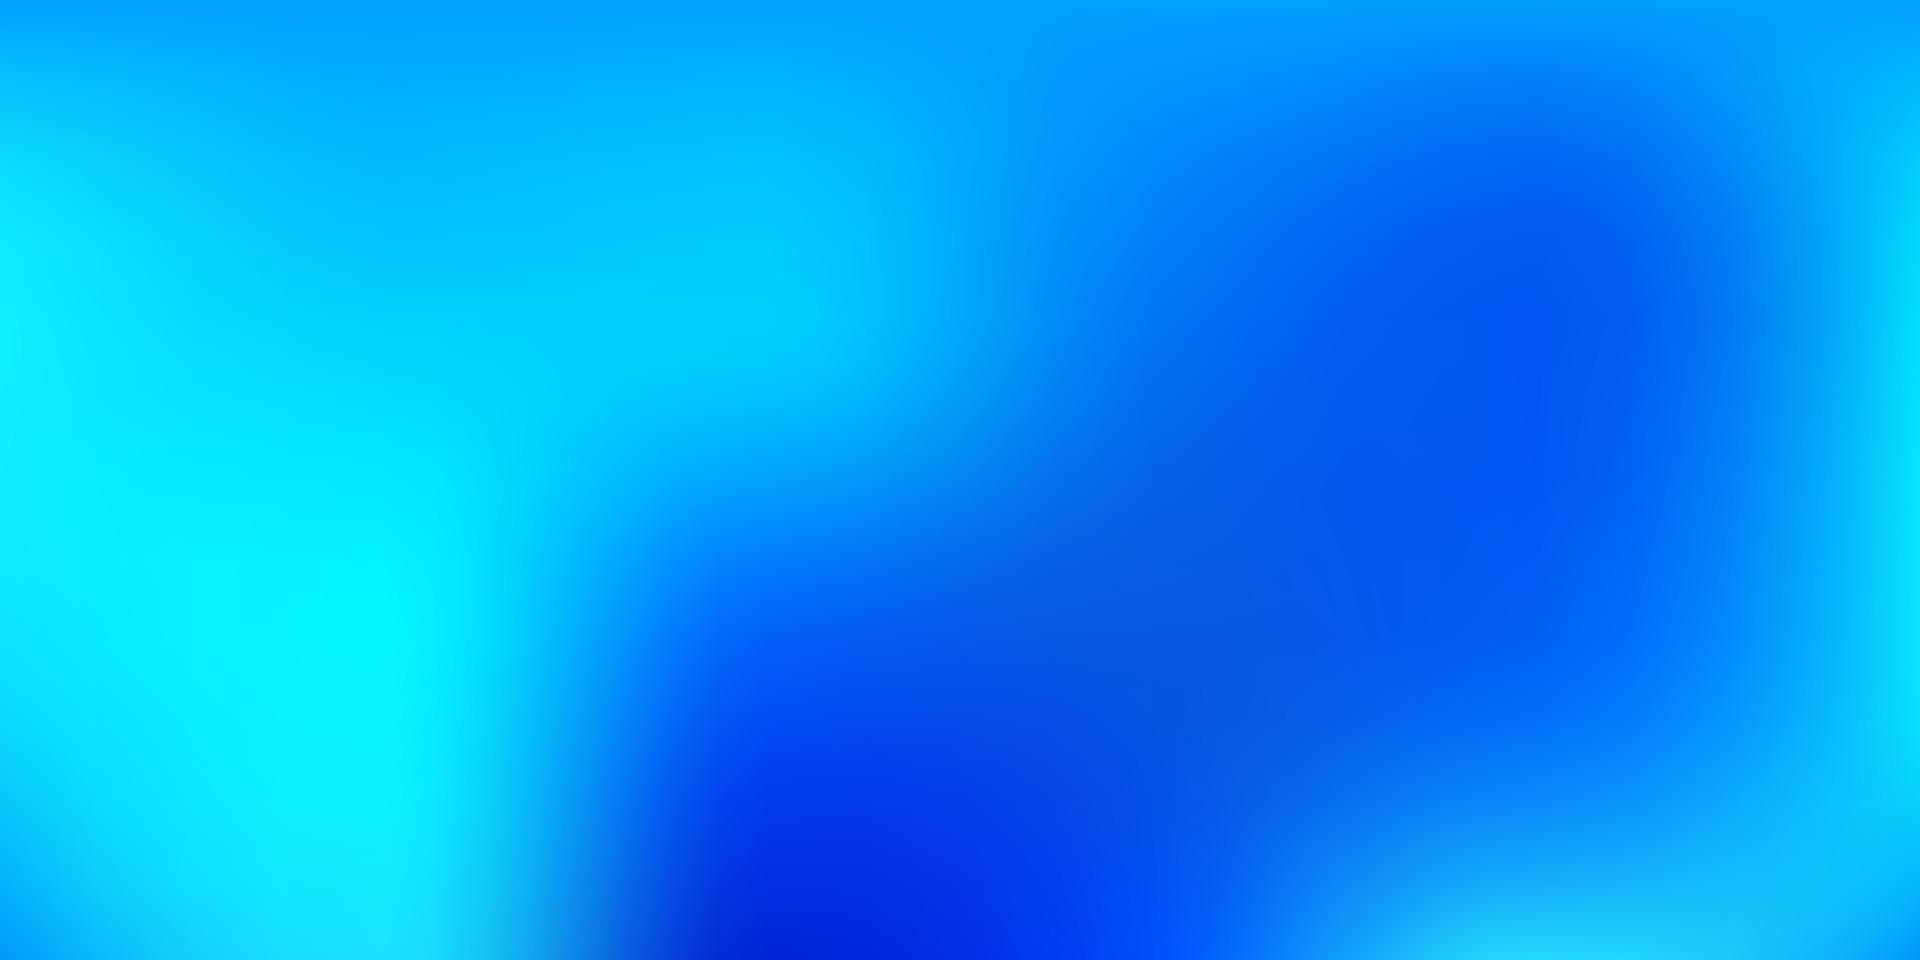 Dark BLUE vector gradient blur background.